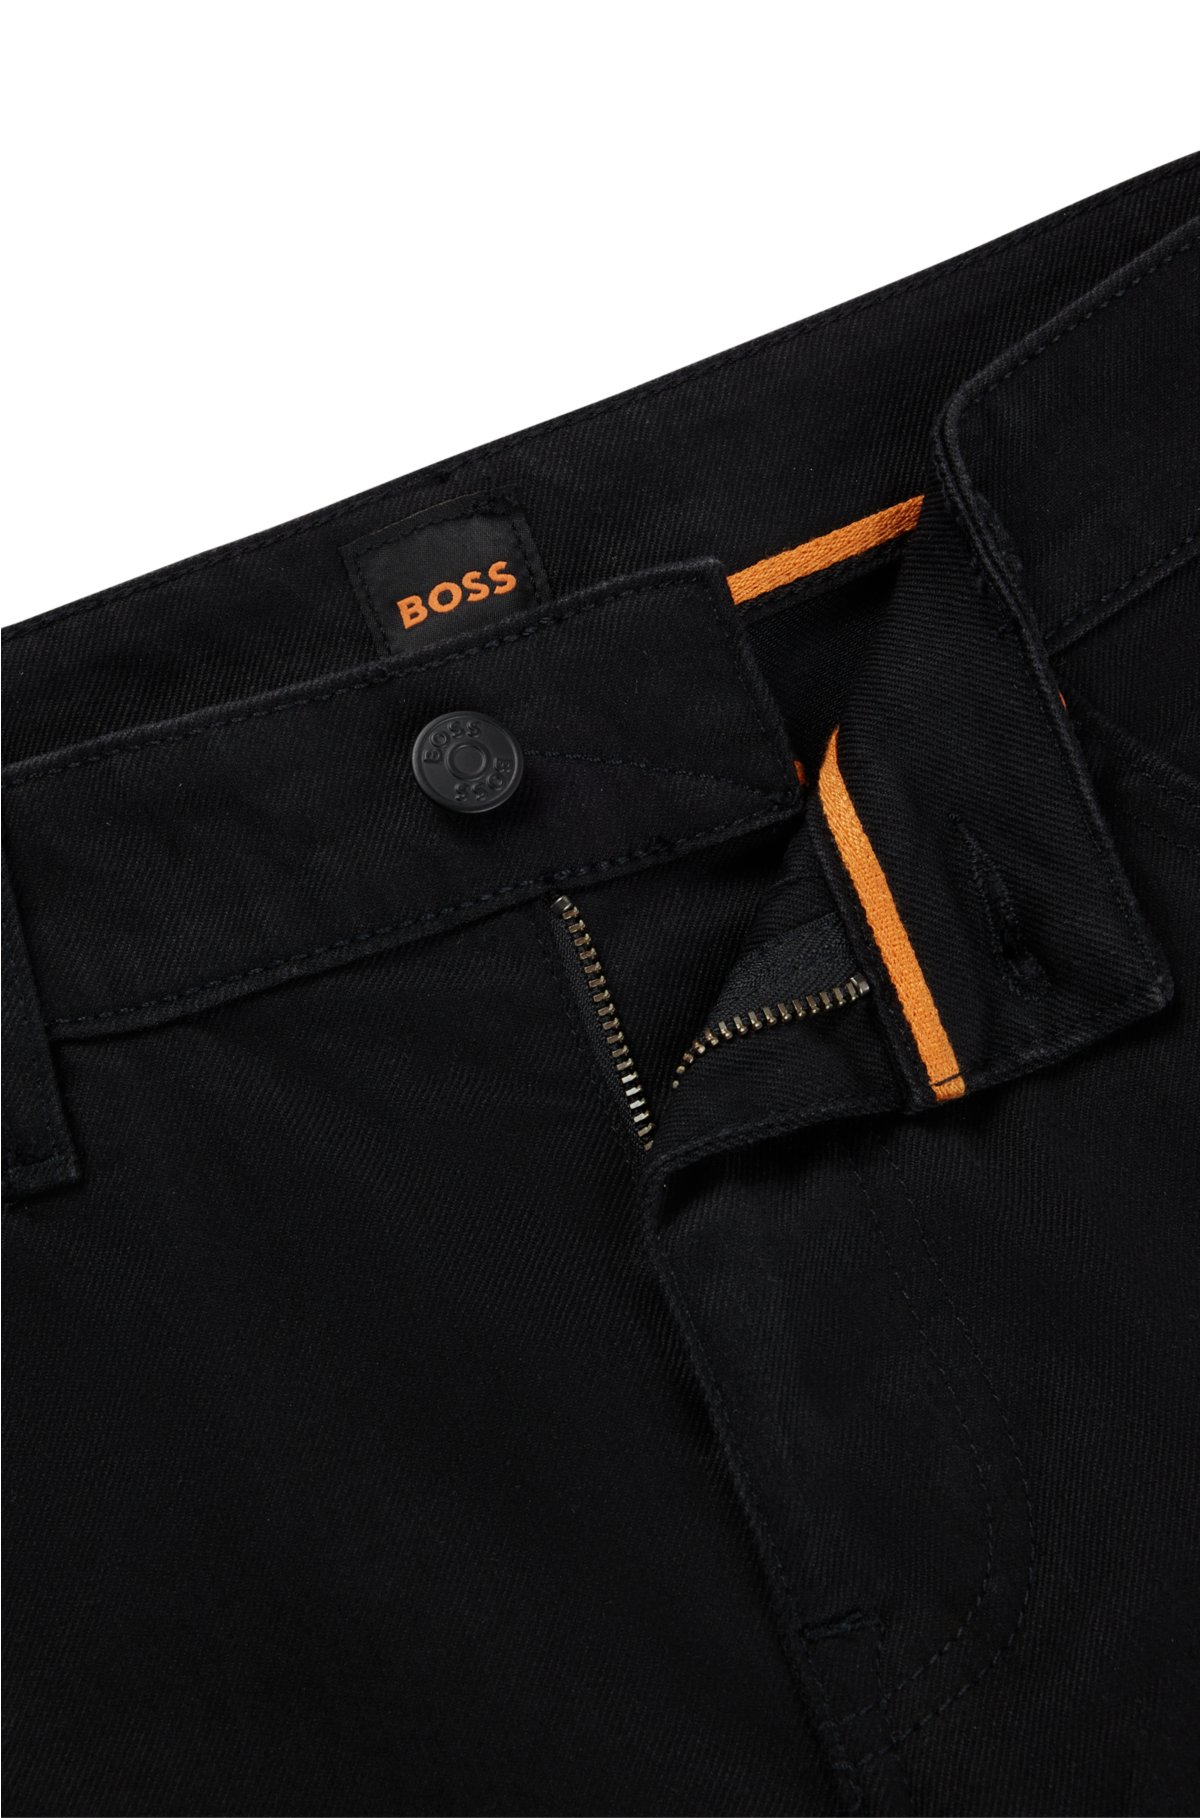 Kænguru Landmand Bevæger sig ikke BOSS - Slim-fit jeans in black comfort-stretch denim